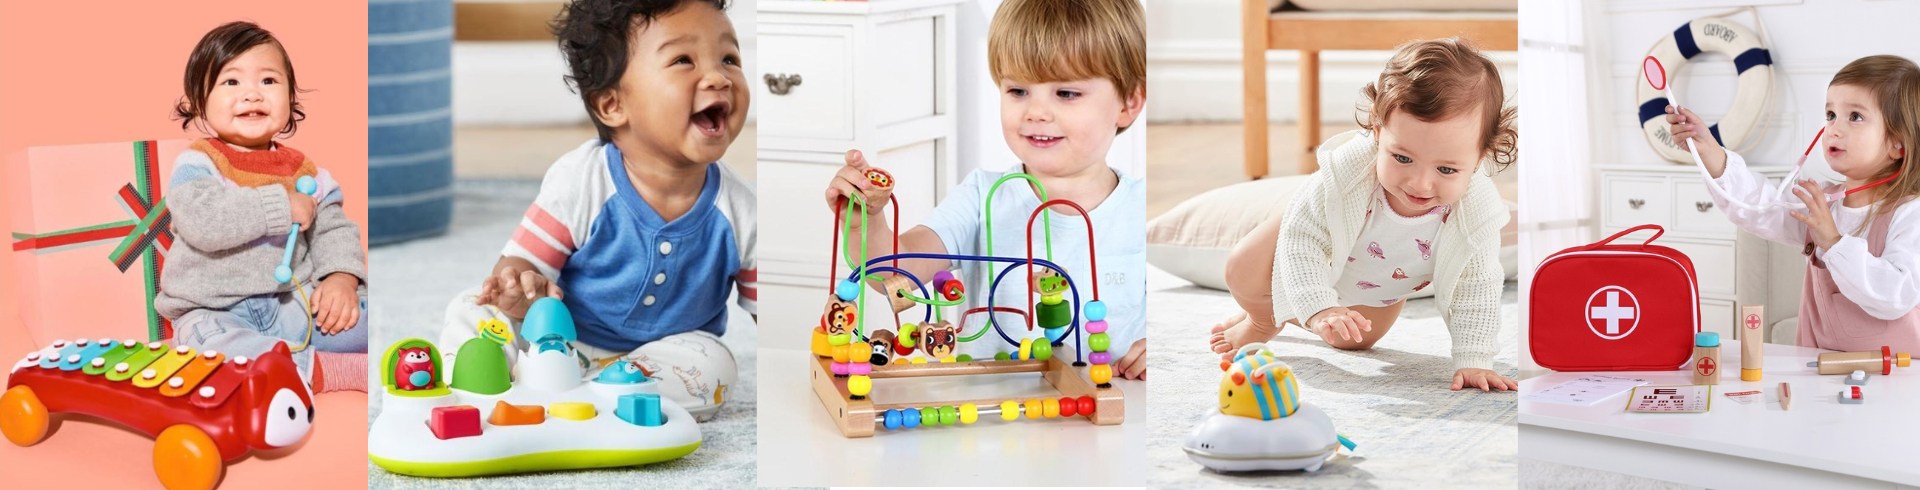 Os Melhores Brinquedos para bebês- DIA DAS CRIANÇAS